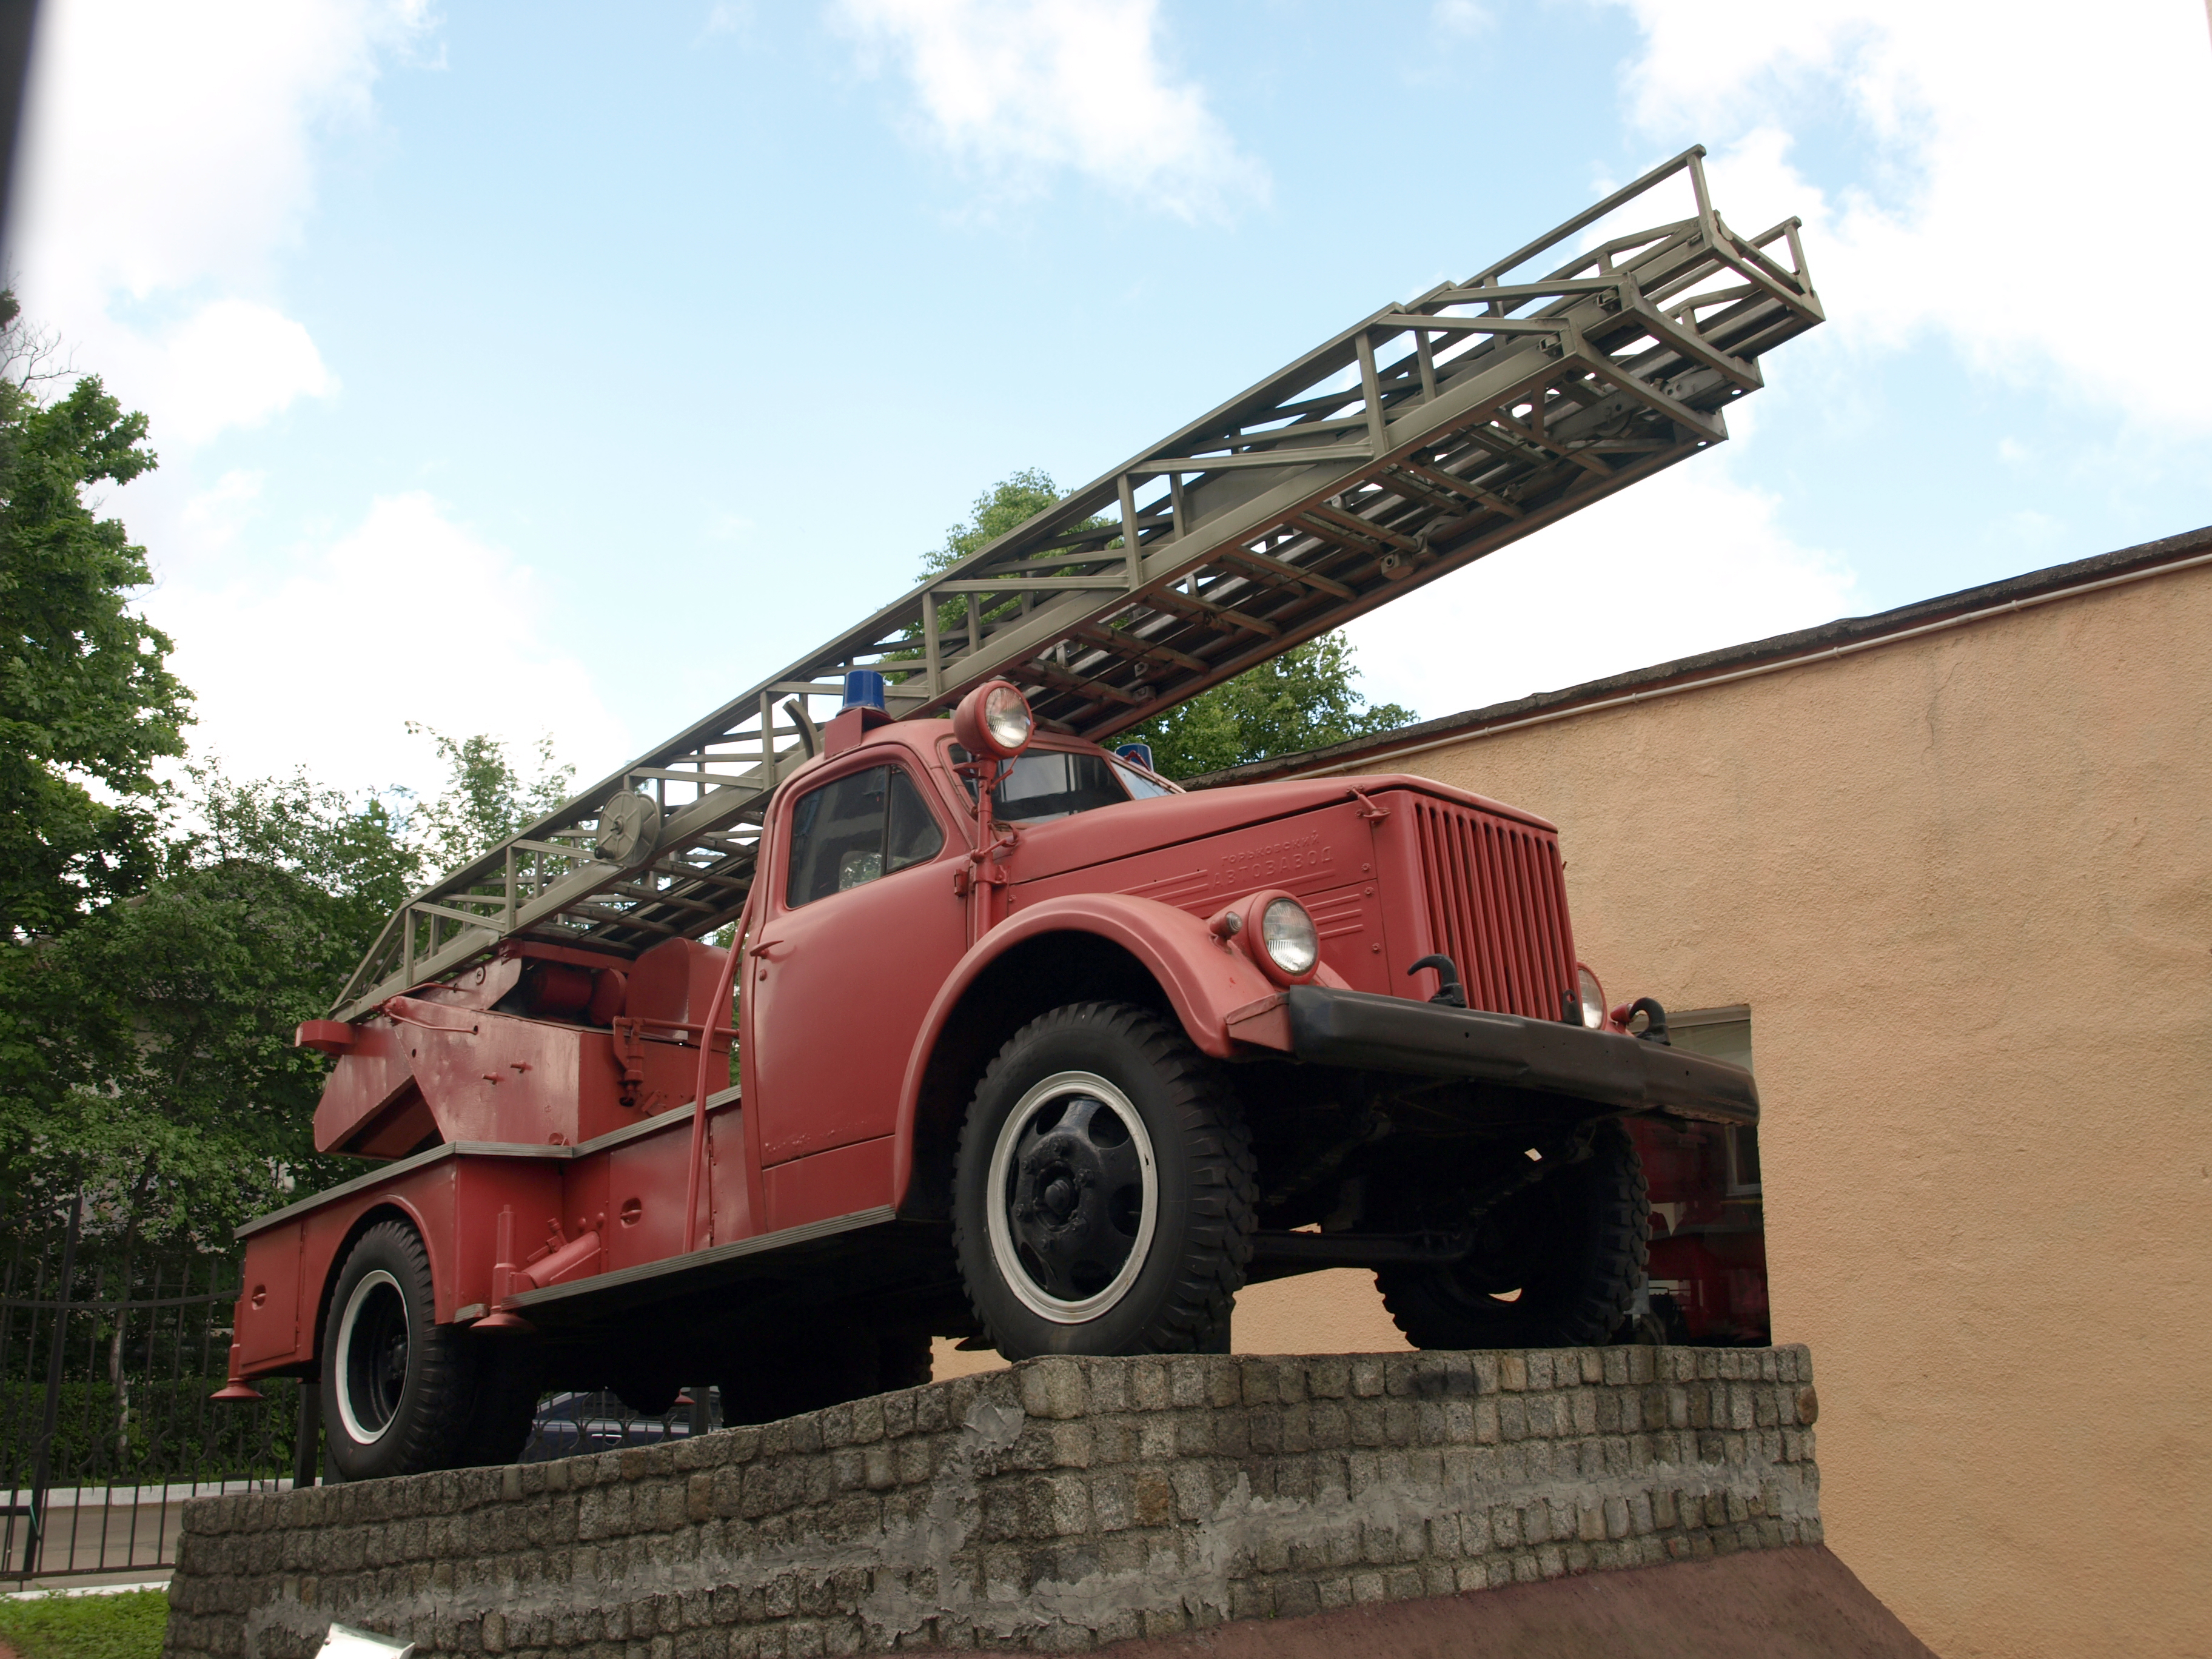 Памятник пожарному автомобилю. ГАЗ 51 автолестница. Пожарная автолестница ГАЗ 51. Автолестница АЛГ-17 (ГАЗ-51а). Пожарная автолестница АЛГ-17.